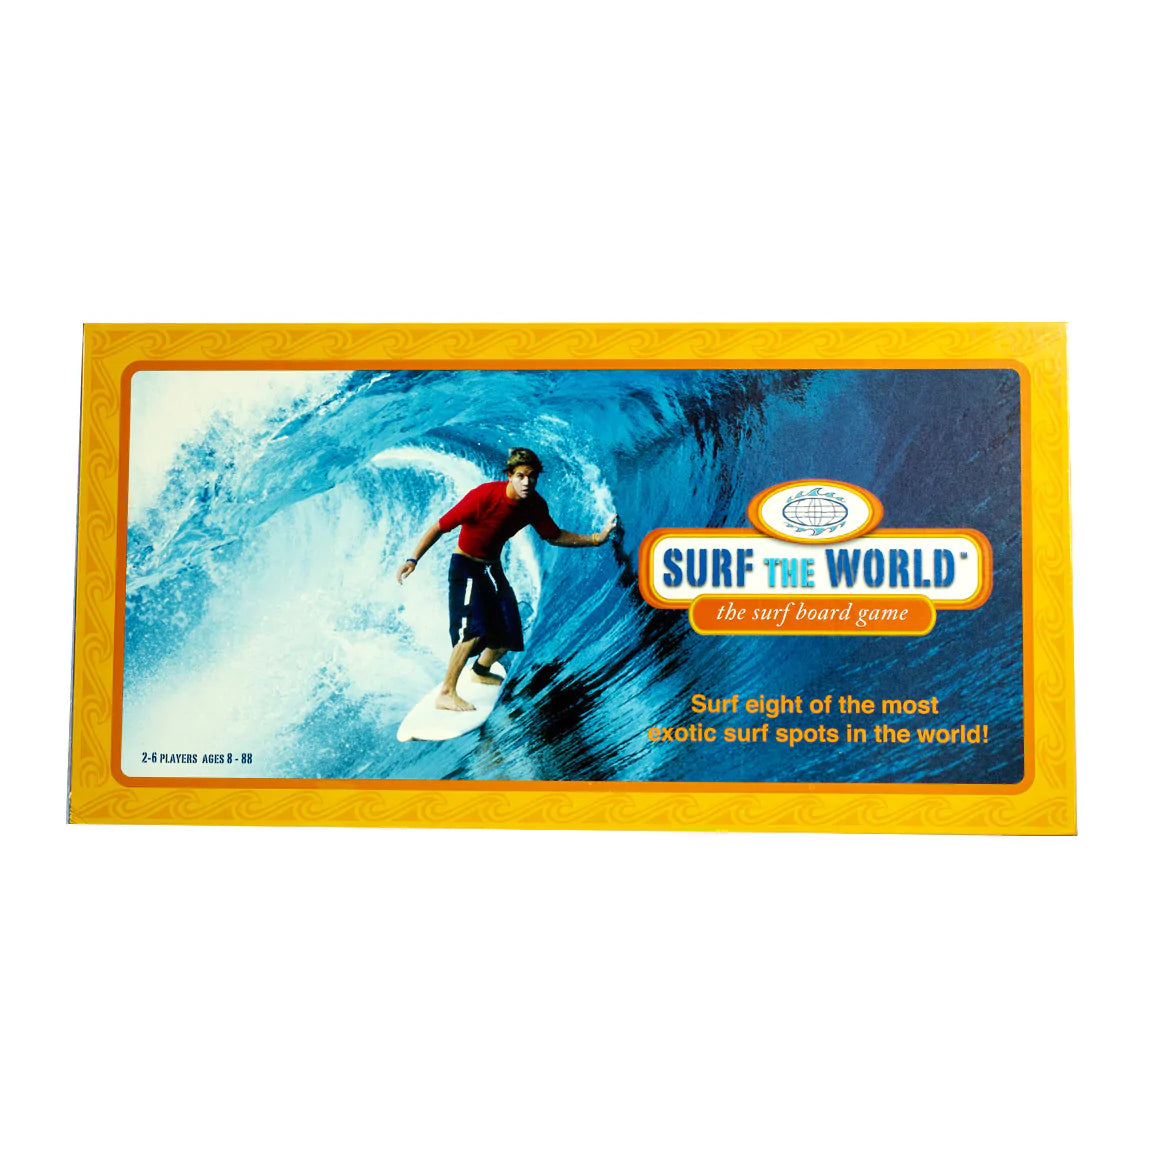 VINTAGE SURF THE WORLD SURF BOARD GAME